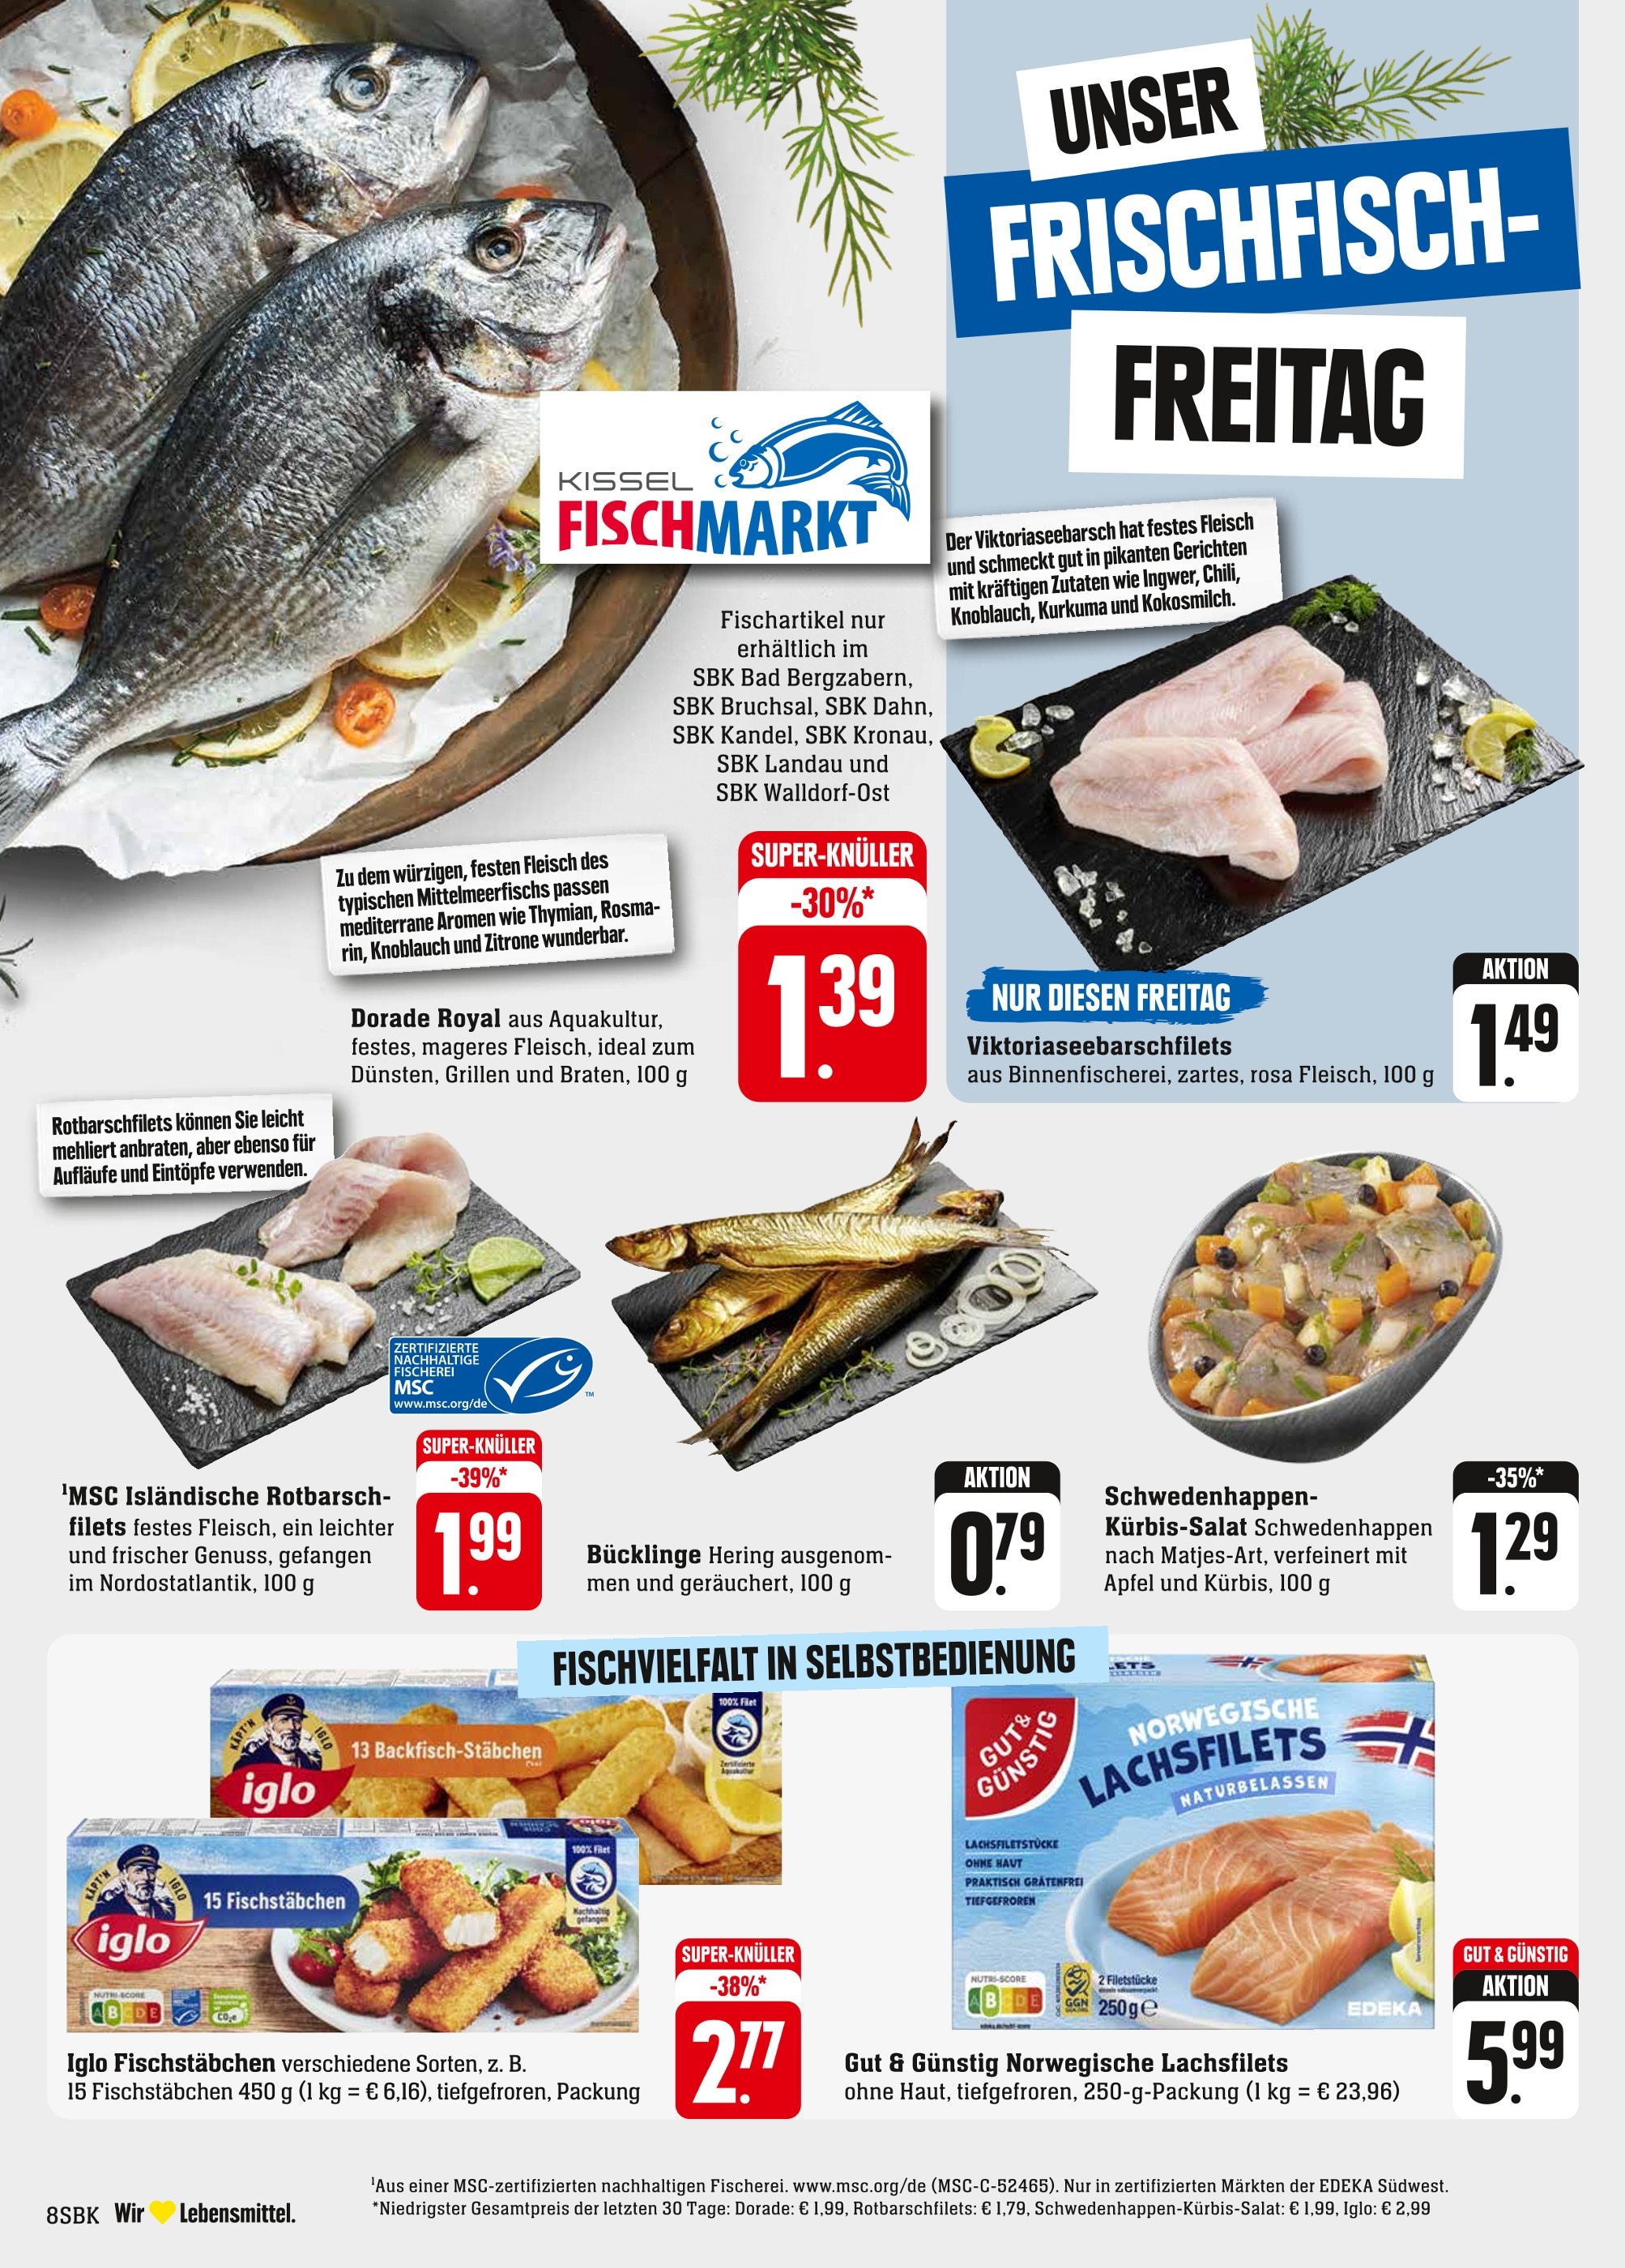 Pirmasens kaufen Pirmasens - Angebote Fisch günstige in in